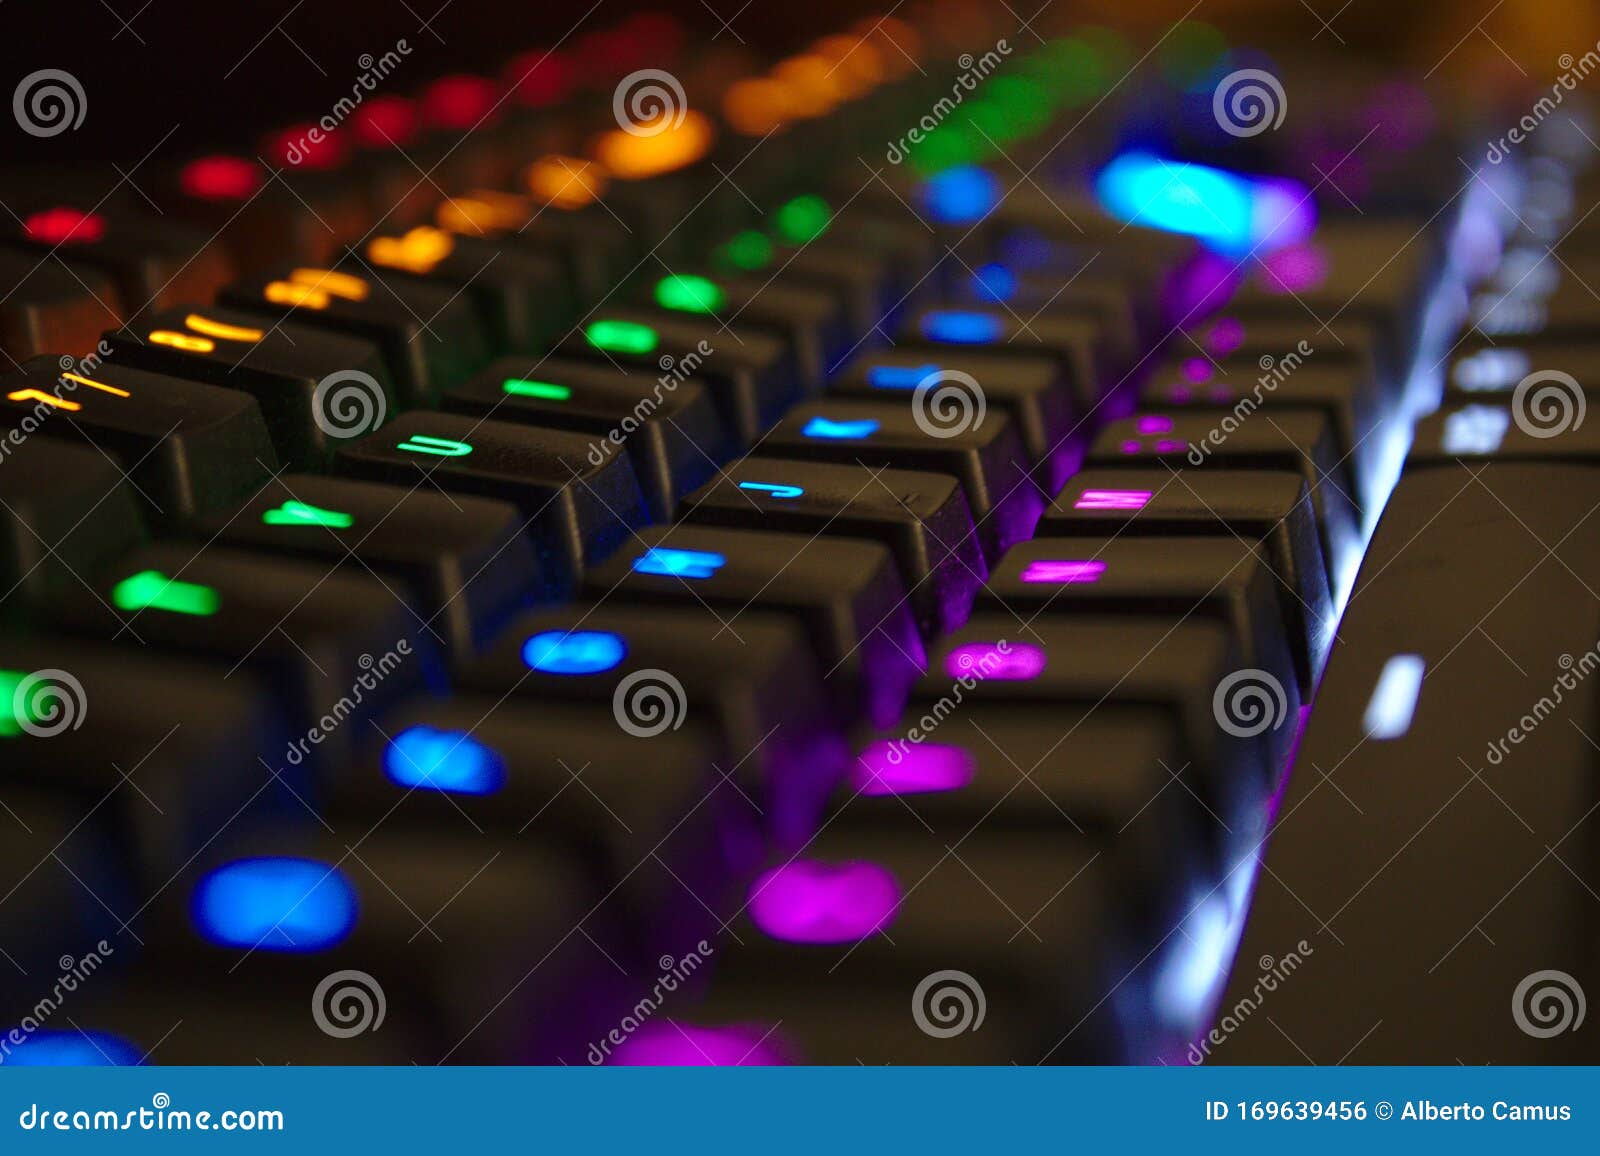 mechanical keyboard illuminated with led lights